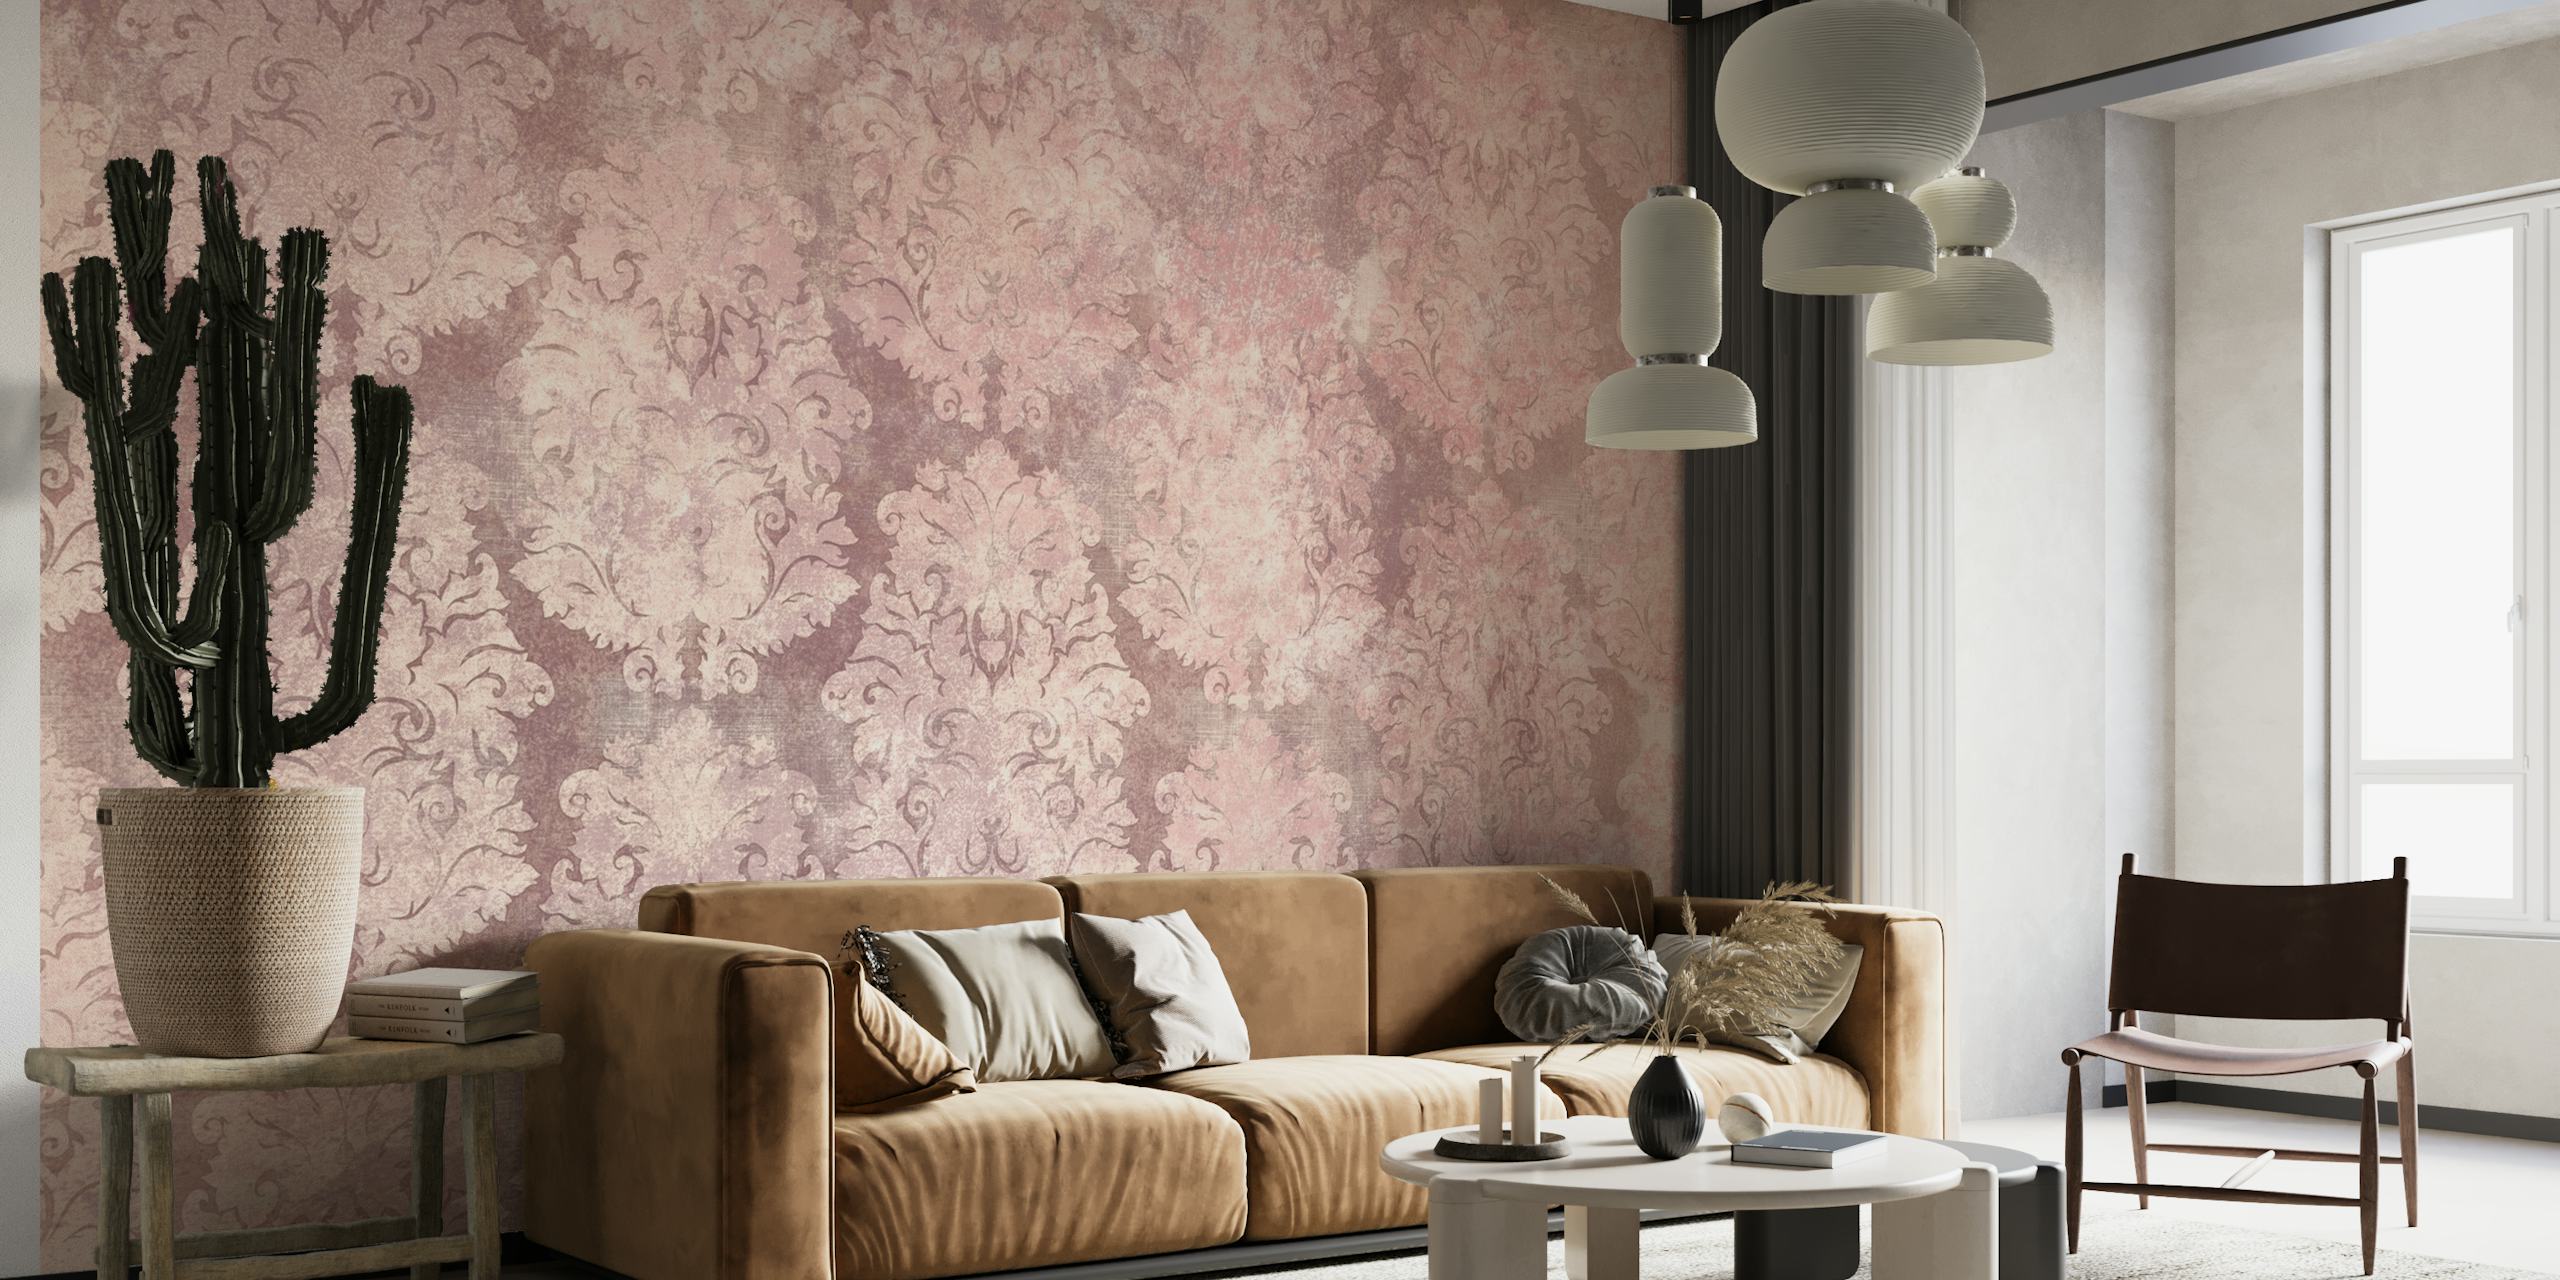 Anmutige, rosa Damastmuster-Tapete, die Innenräumen einen Vintage-Charme verleiht